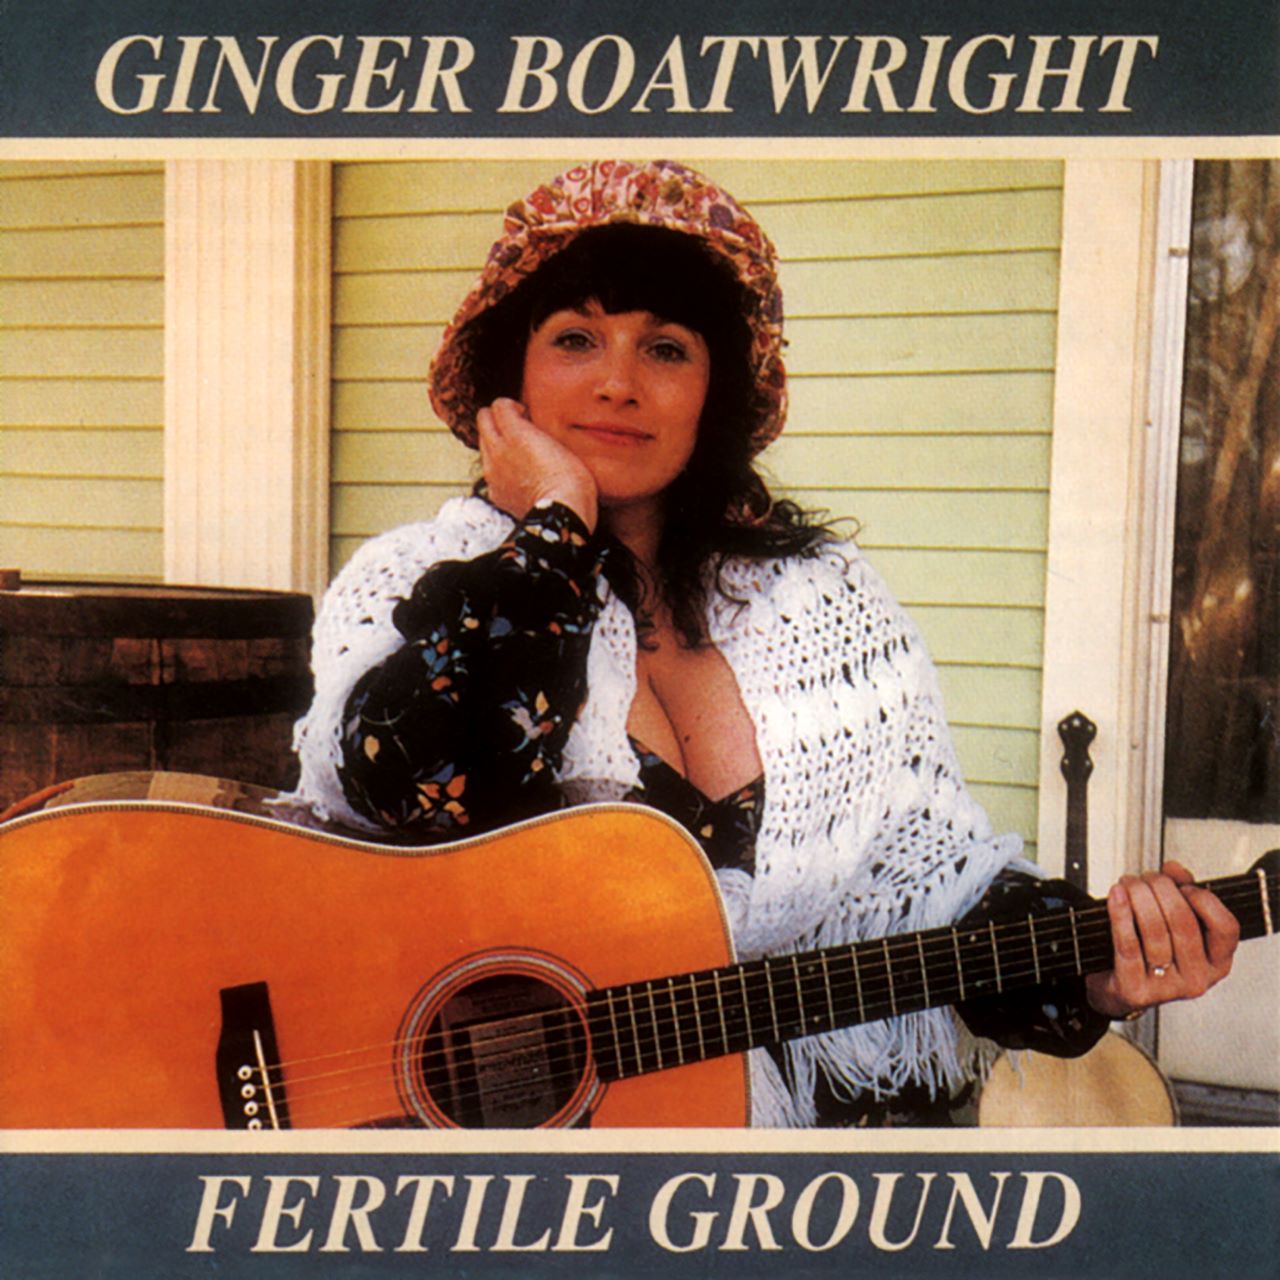 Ginger Boatwright - Fertile Ground cover album